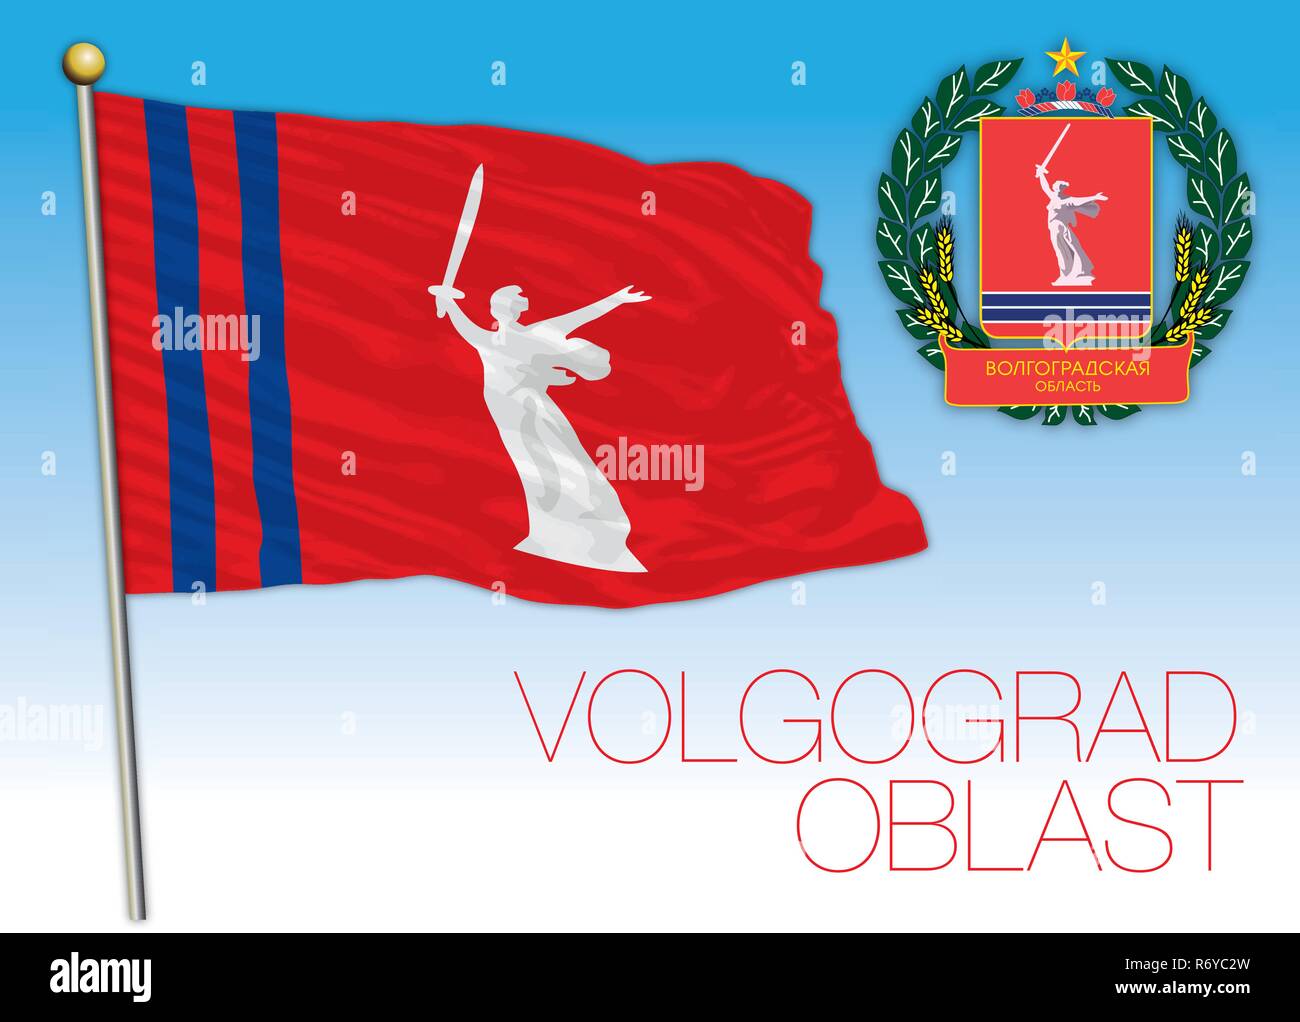 Volgograd oblast flag, Russian Federation, vector illustration Stock Vector